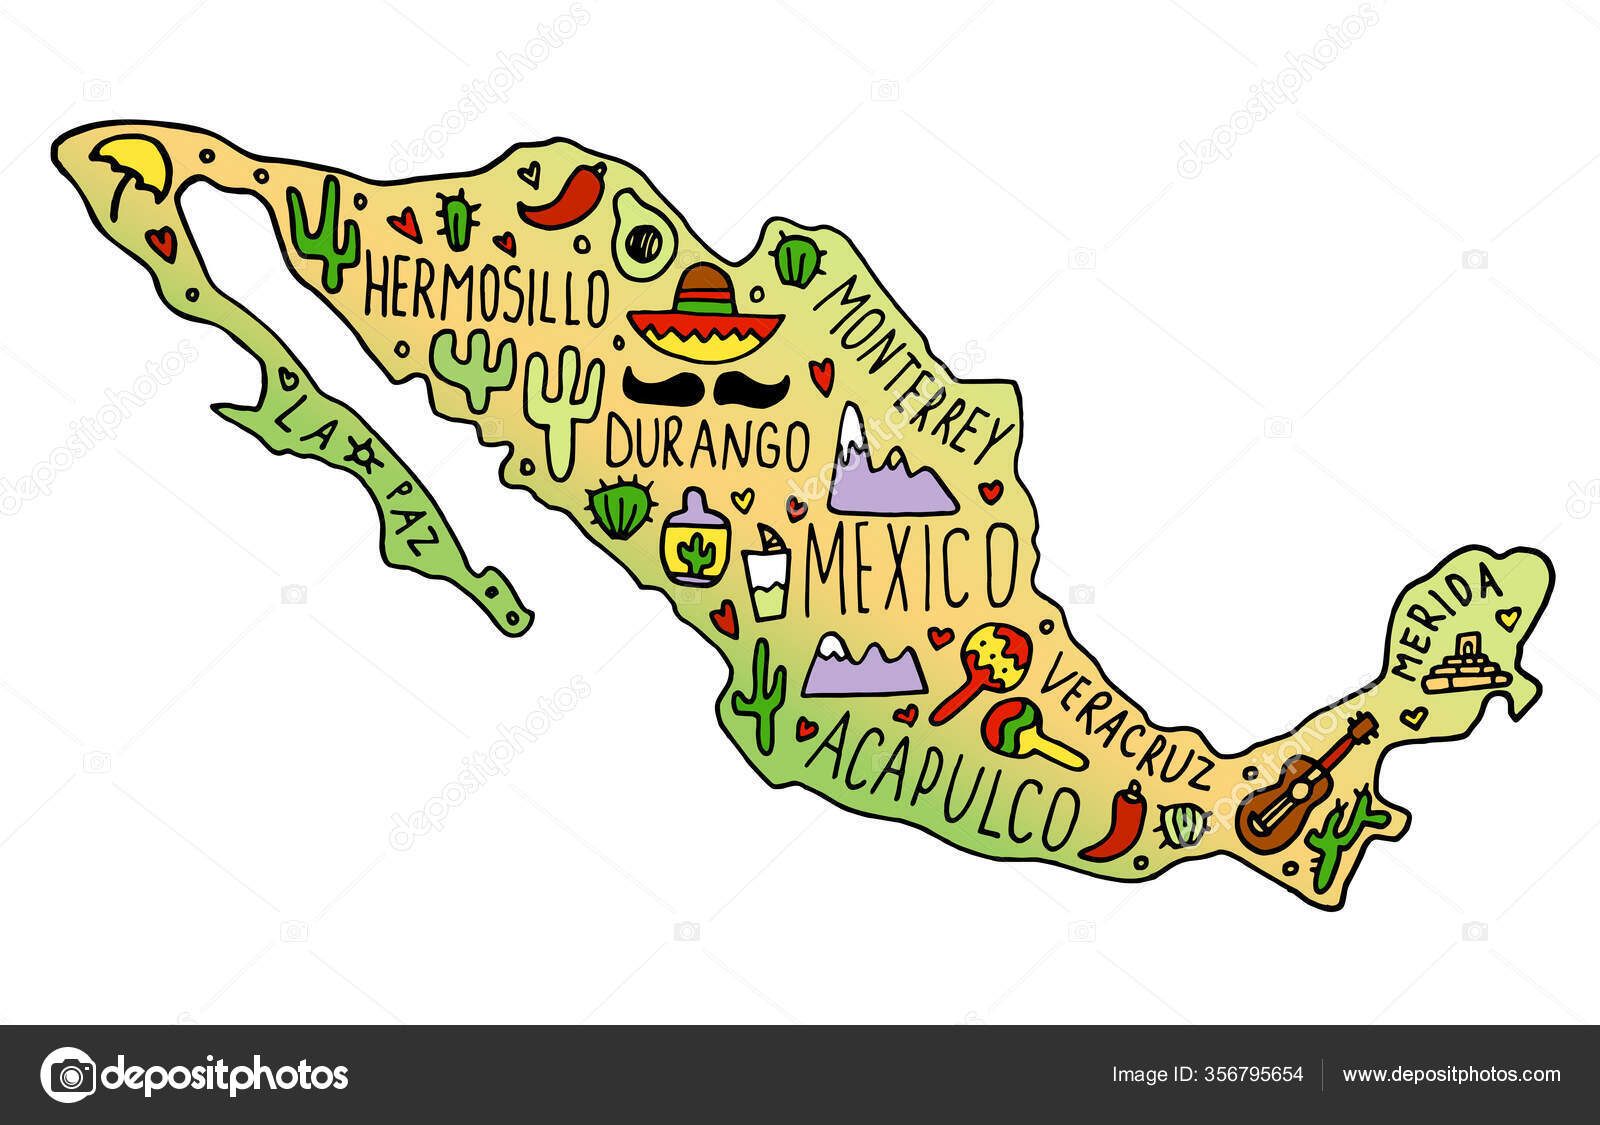 64 ilustraciones de stock de Monterrey méxico | Depositphotos®